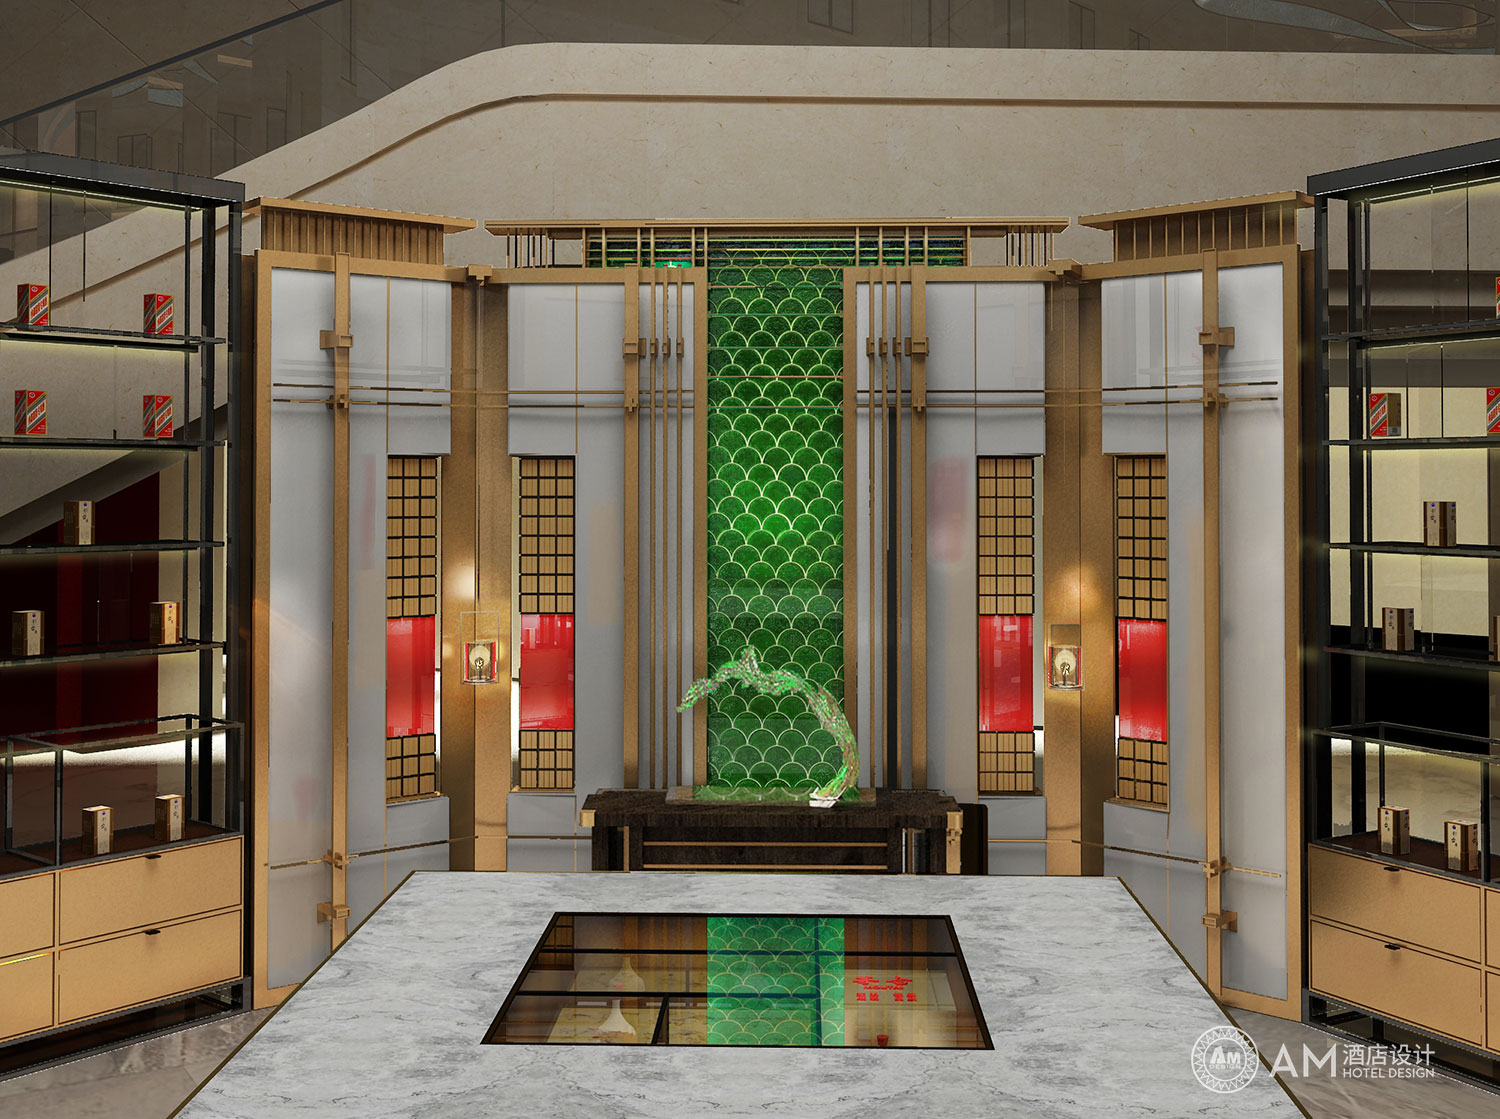 AM DESIGN | Wine exhibition area design of Cangzhou Bohai Hotel